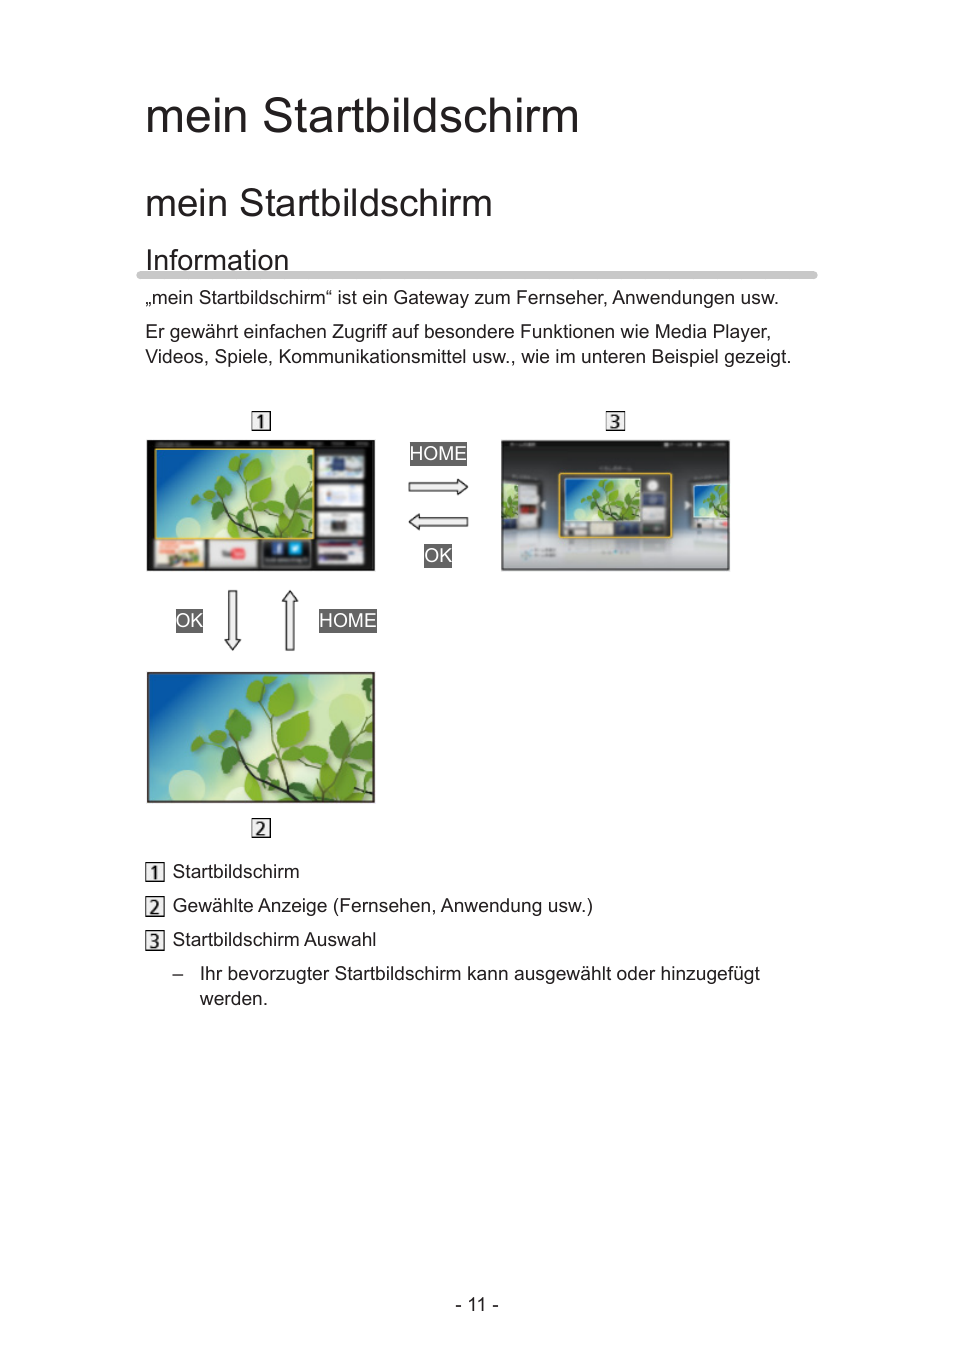 Mein startbildschirm, Information, Information 11 | Panasonic TX50ASW504 Benutzerhandbuch | Seite 11 / 228